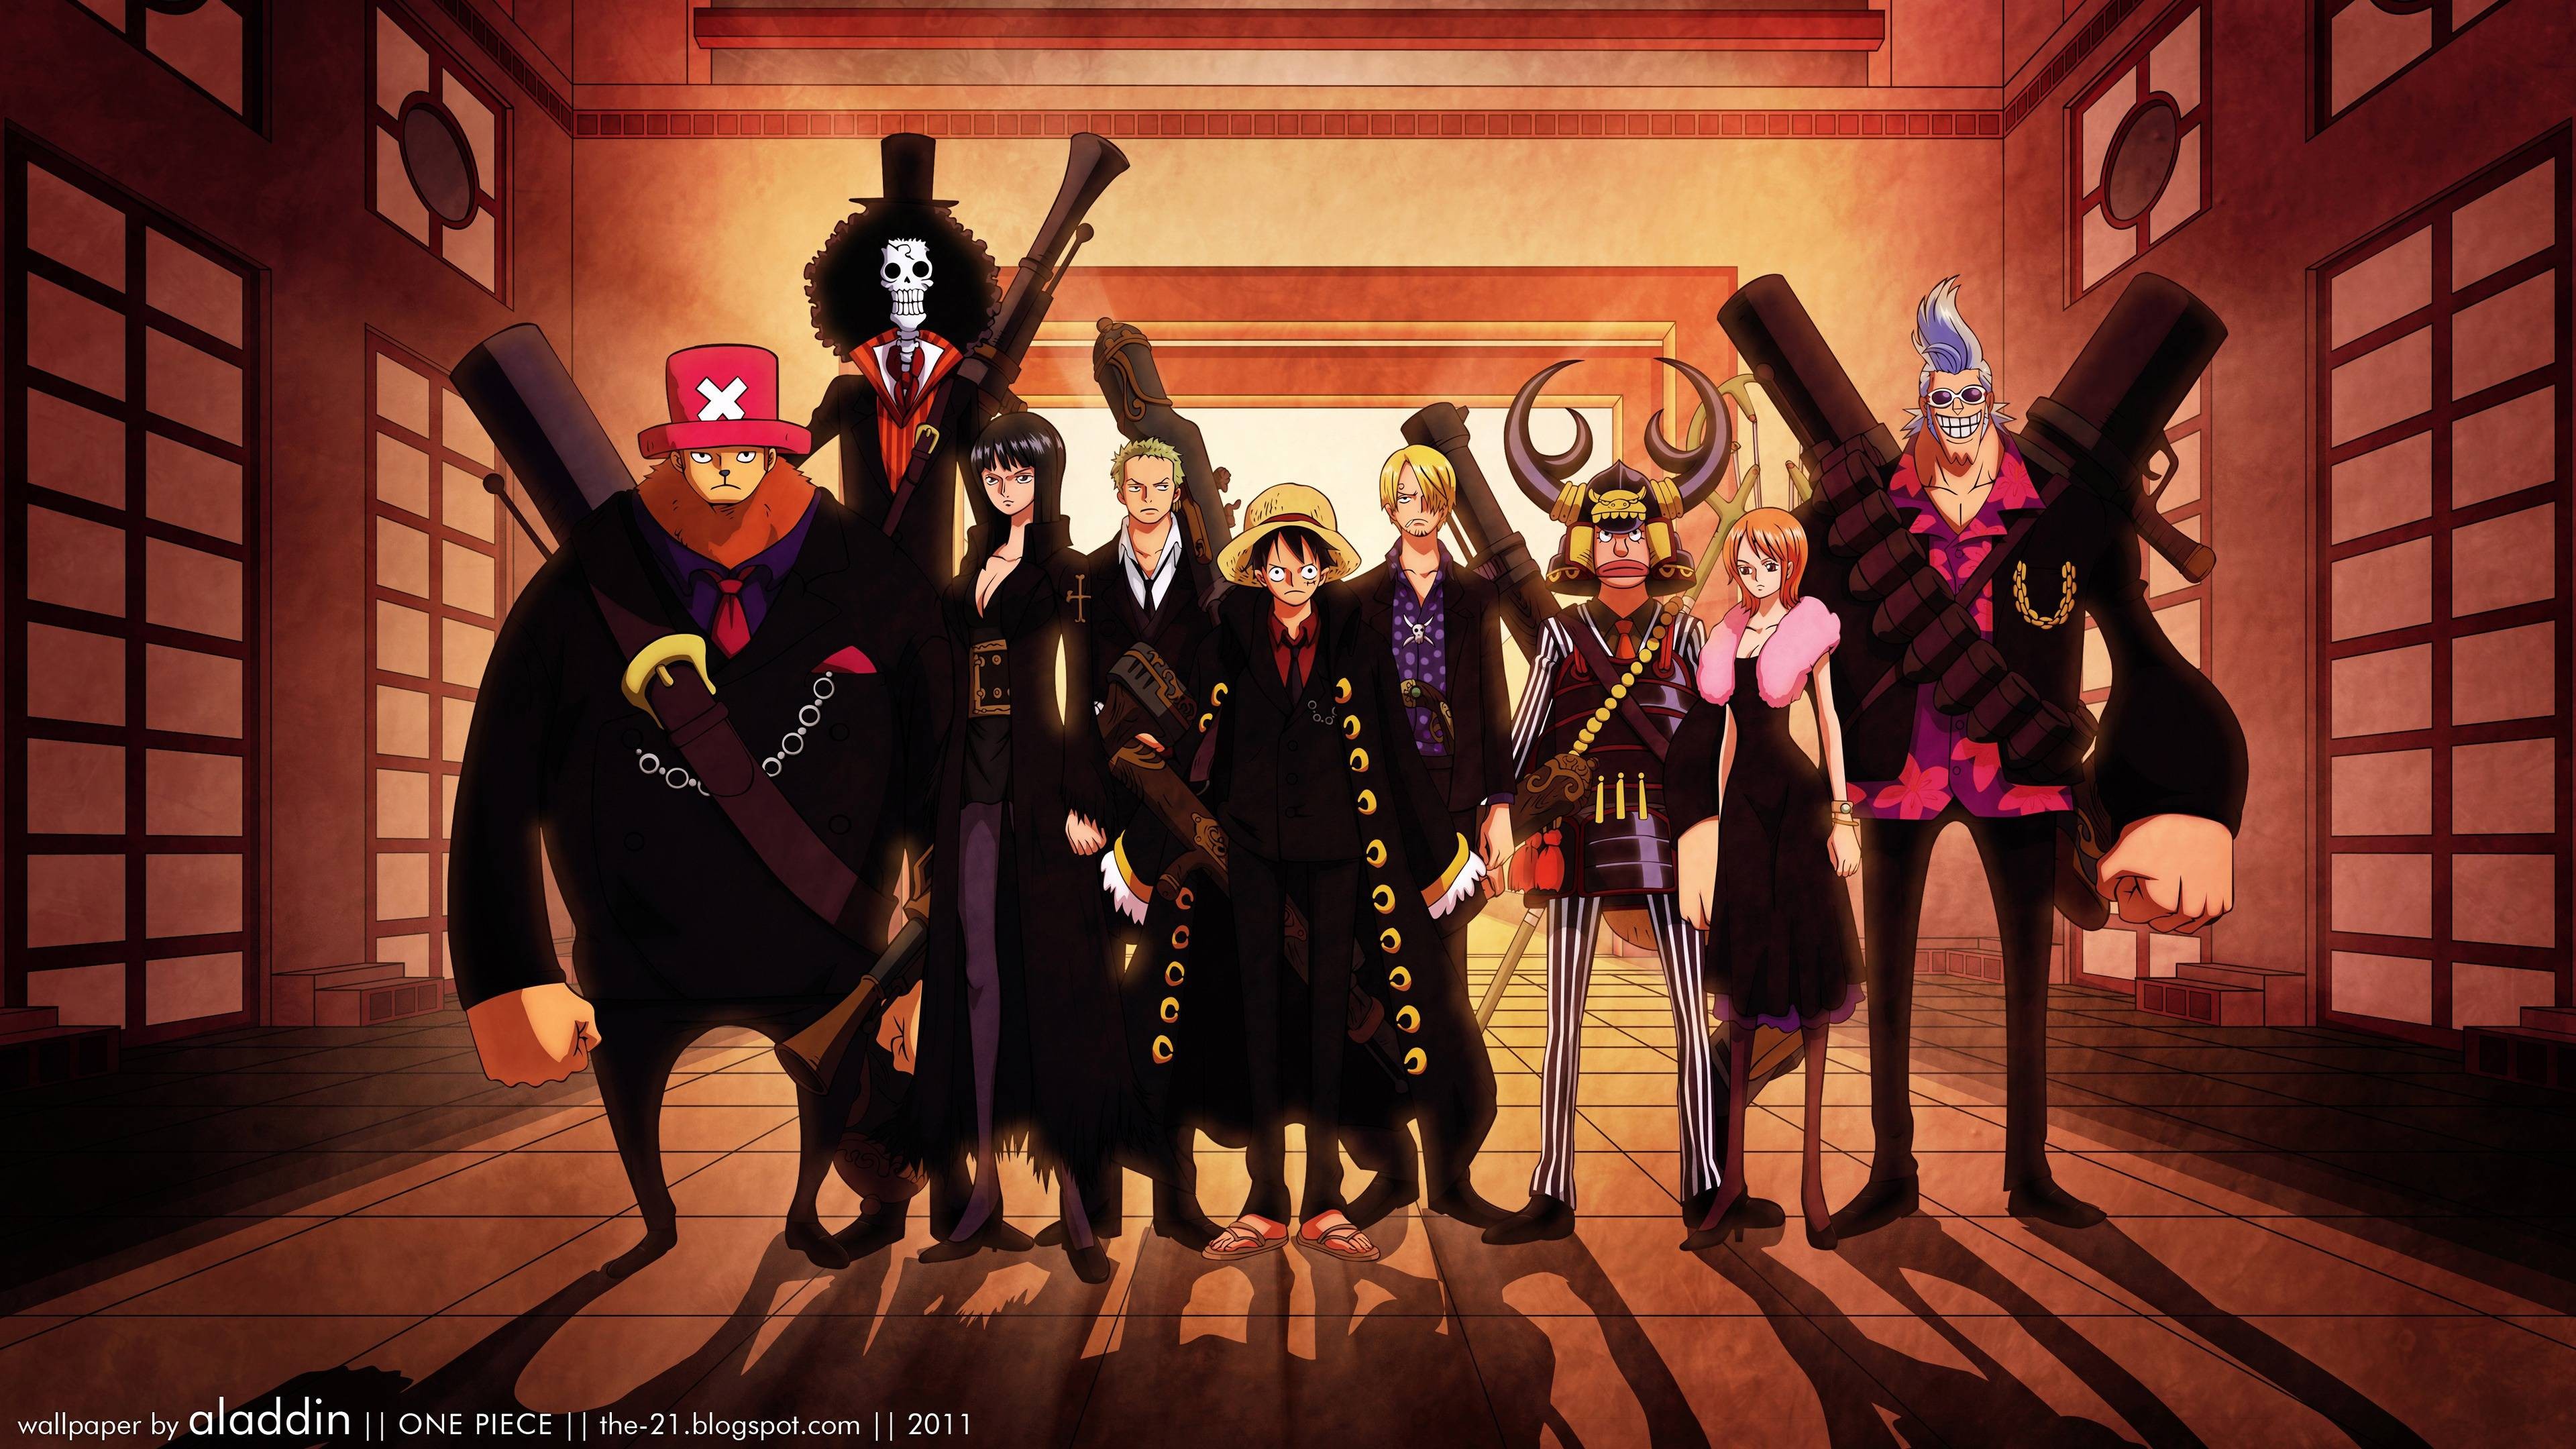 One Piece Figures là thế giới quần chúng của các nhân vật trong bộ manga nổi tiếng One Piece. Được chế tác cẩn thận với độ chi tiết tuyệt vời, các bộ sưu tập One Piece Figures sẽ khiến bạn say đắm với những nhân vật đầy tính cách và kẻ thù đáng sợ. Hãy tham gia bộ sưu tập ngay hôm nay!